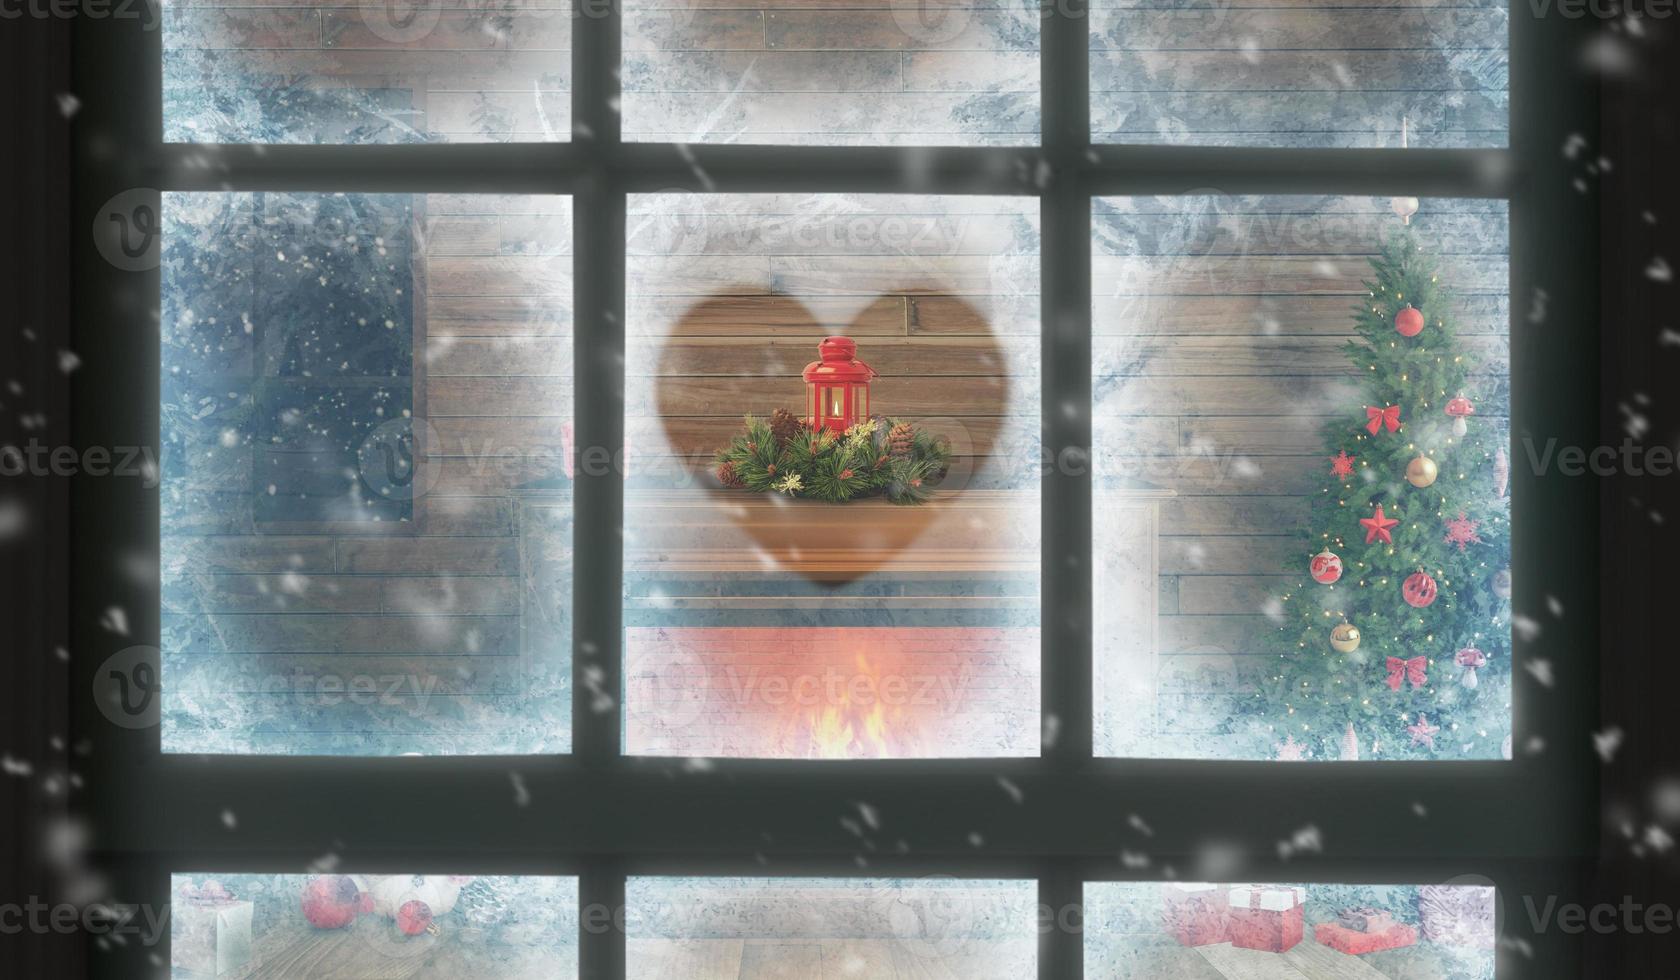 ver a través de la ventana del interior de la casa en Navidad. un corazón pintado en la escarcha de la ventana. dentro hay una chimenea con un árbol de navidad, regalos y decoraciones foto